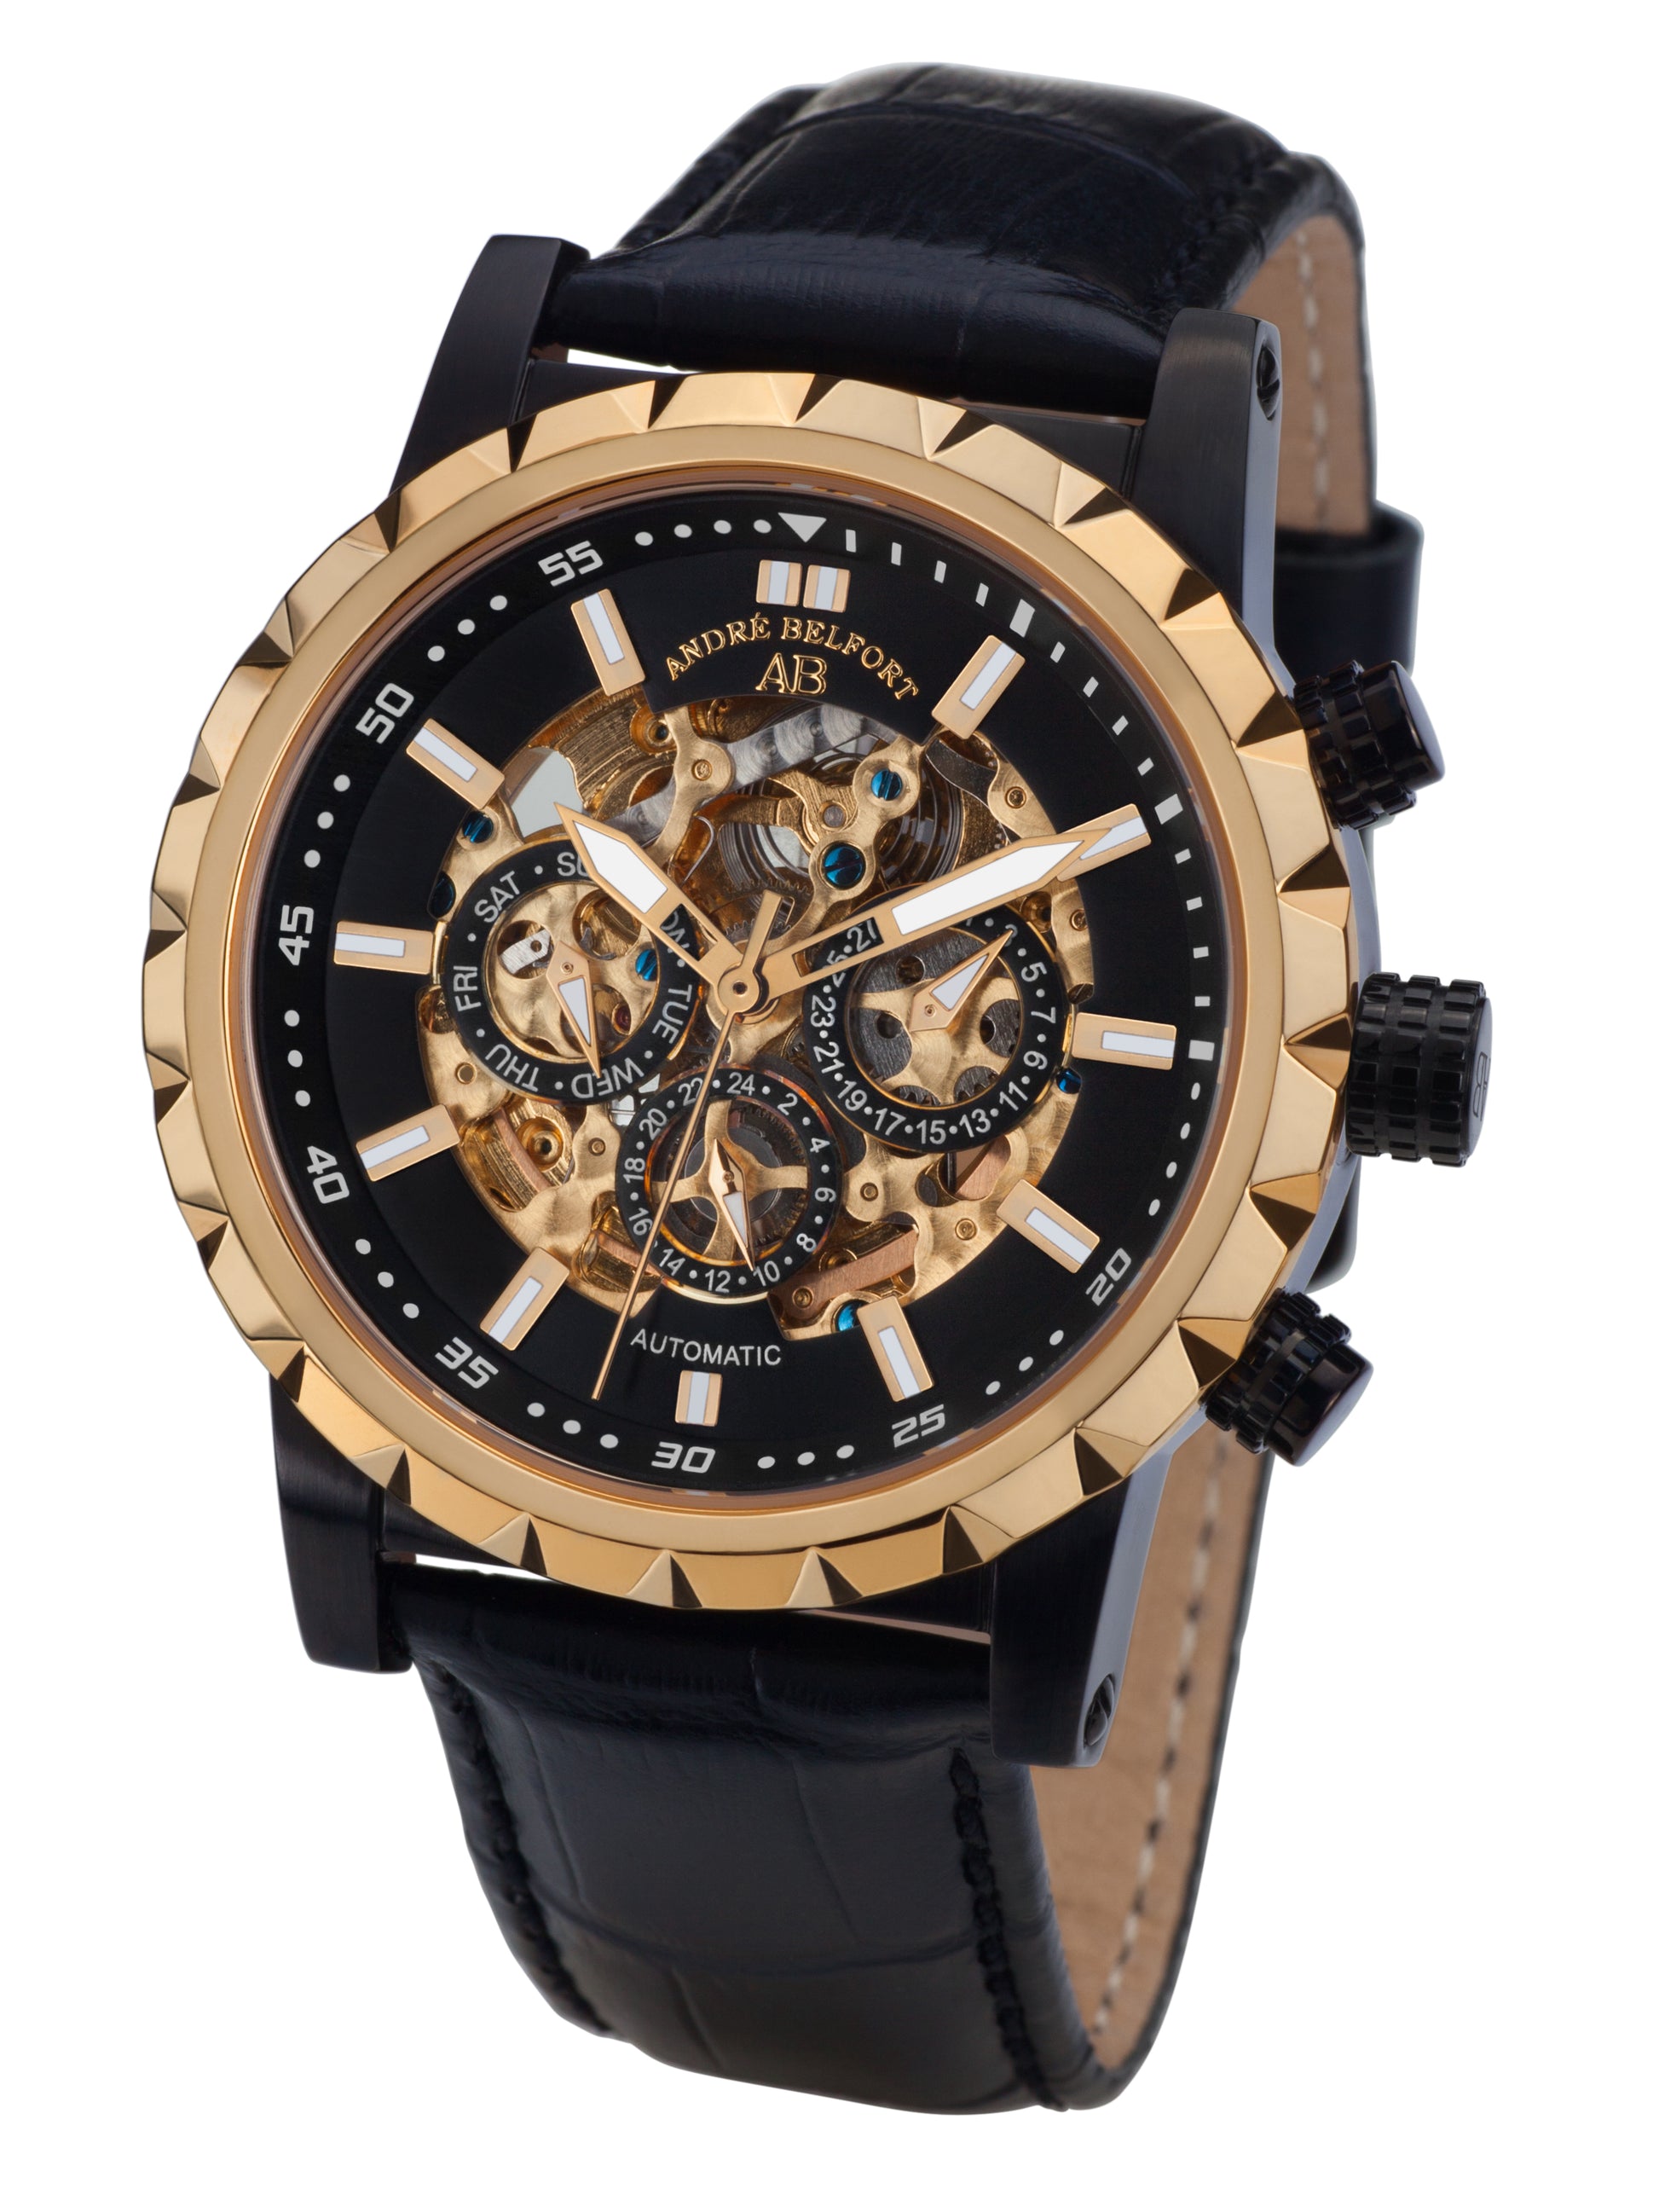 Automatic watches — Conquête — André Belfort — IP black gold